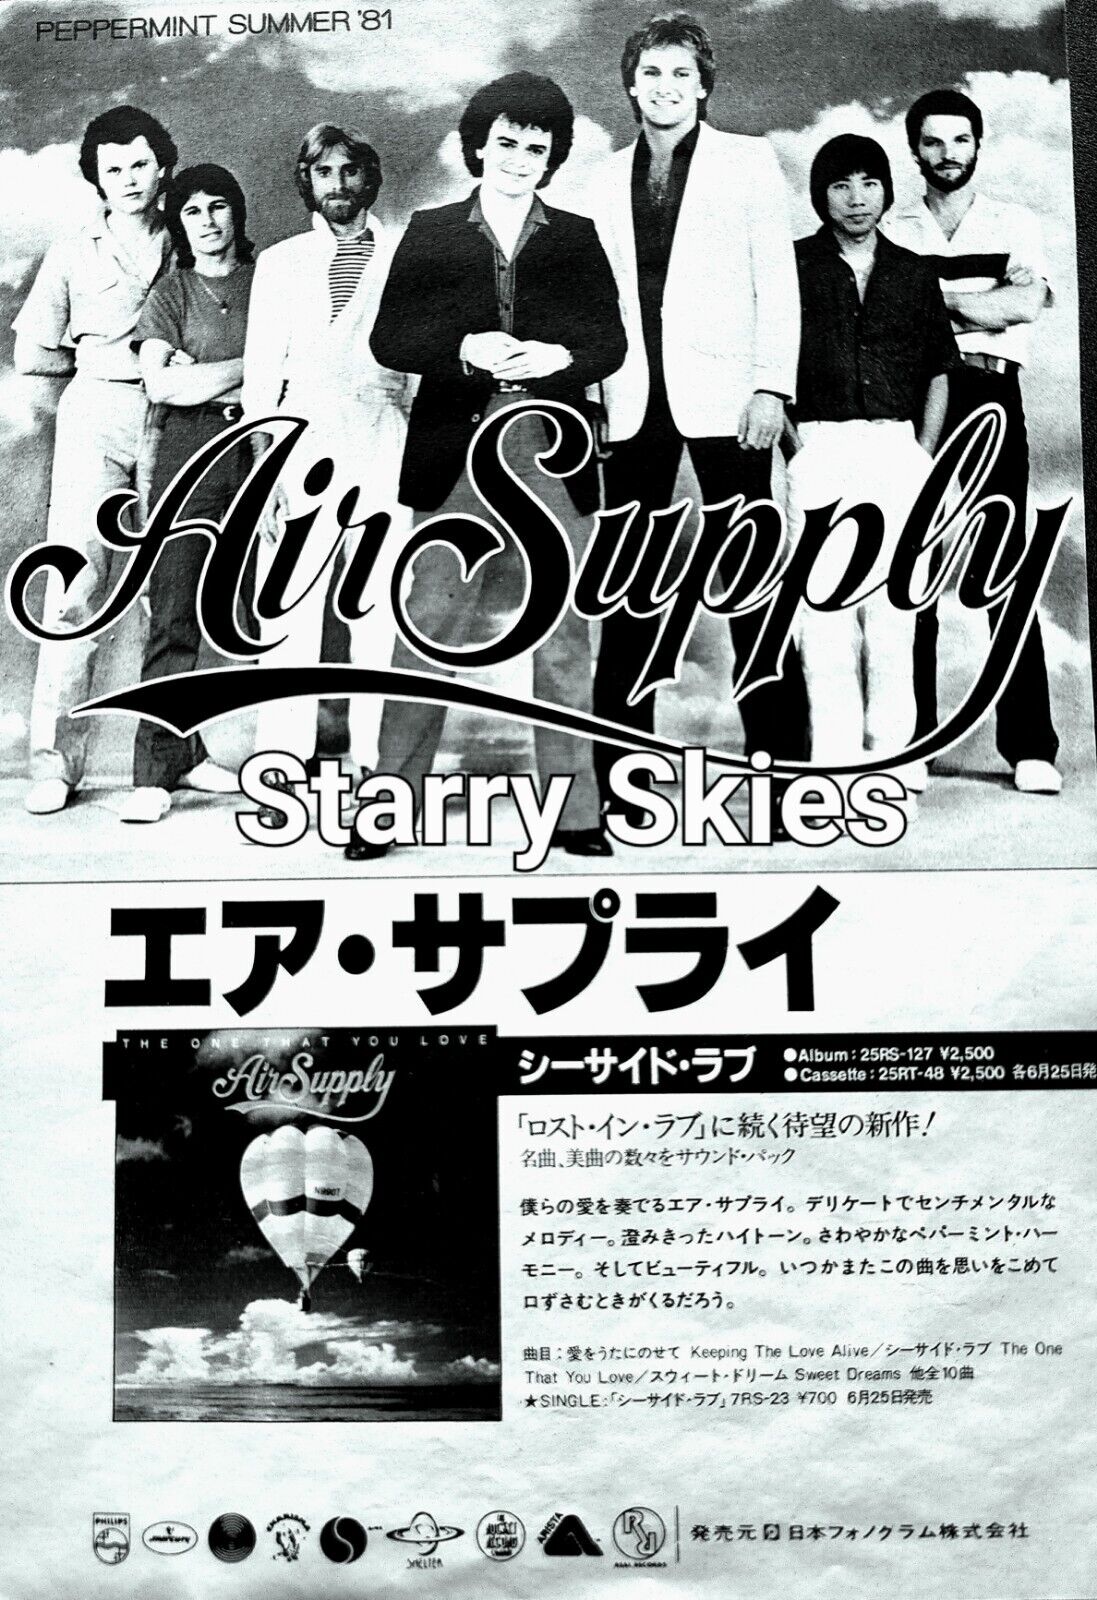 AIR SUPPLY-PRAYING MANTIS 2 SIDED 1981 VINTAGE JAPAN PROMO AD 